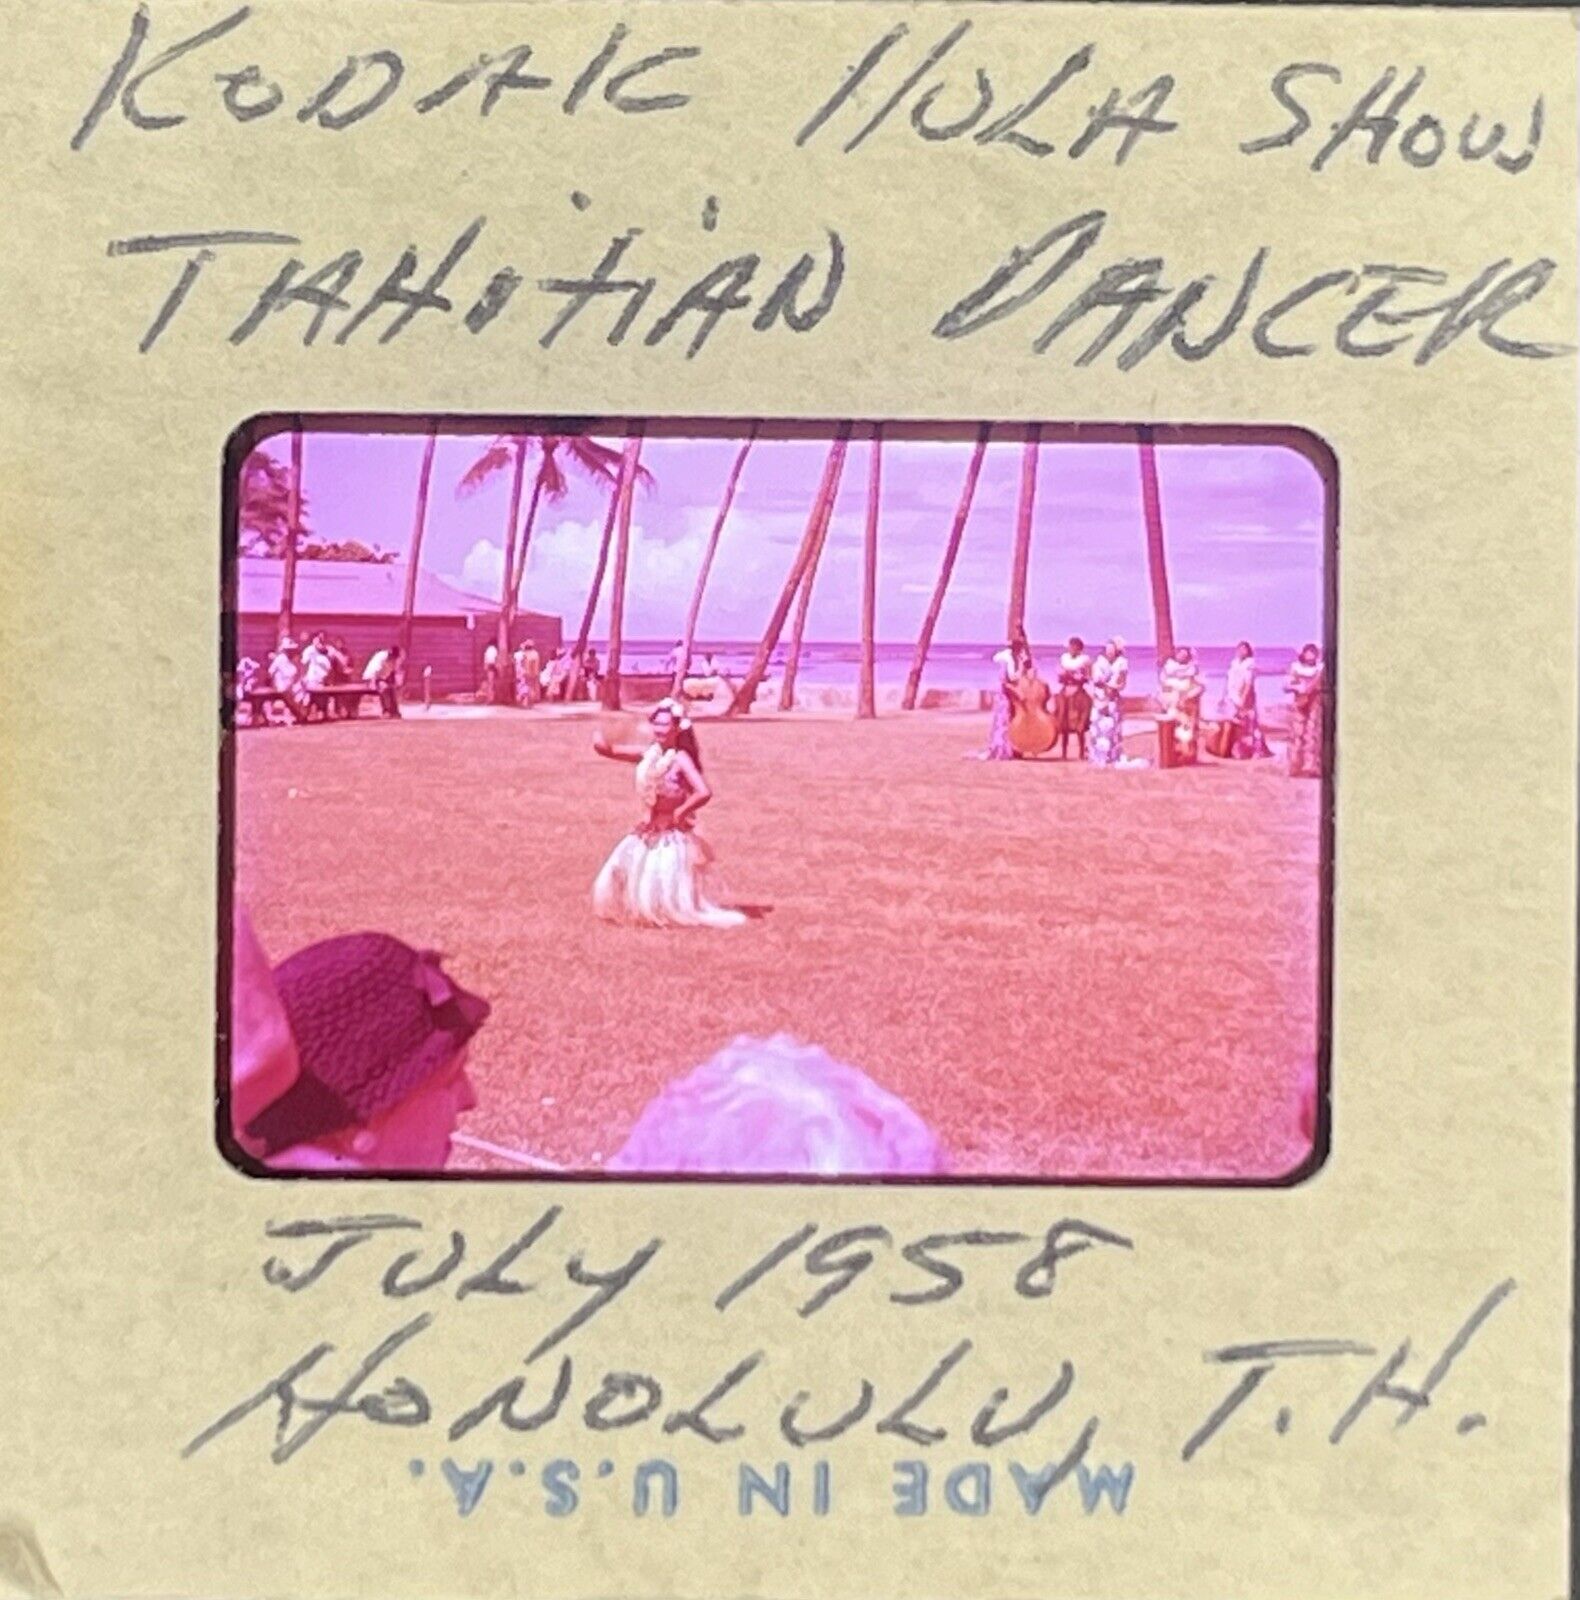 Vintage 35mm slide 1958 Kodak Hula Show Honolulu Hawaii Ektachrome Slide